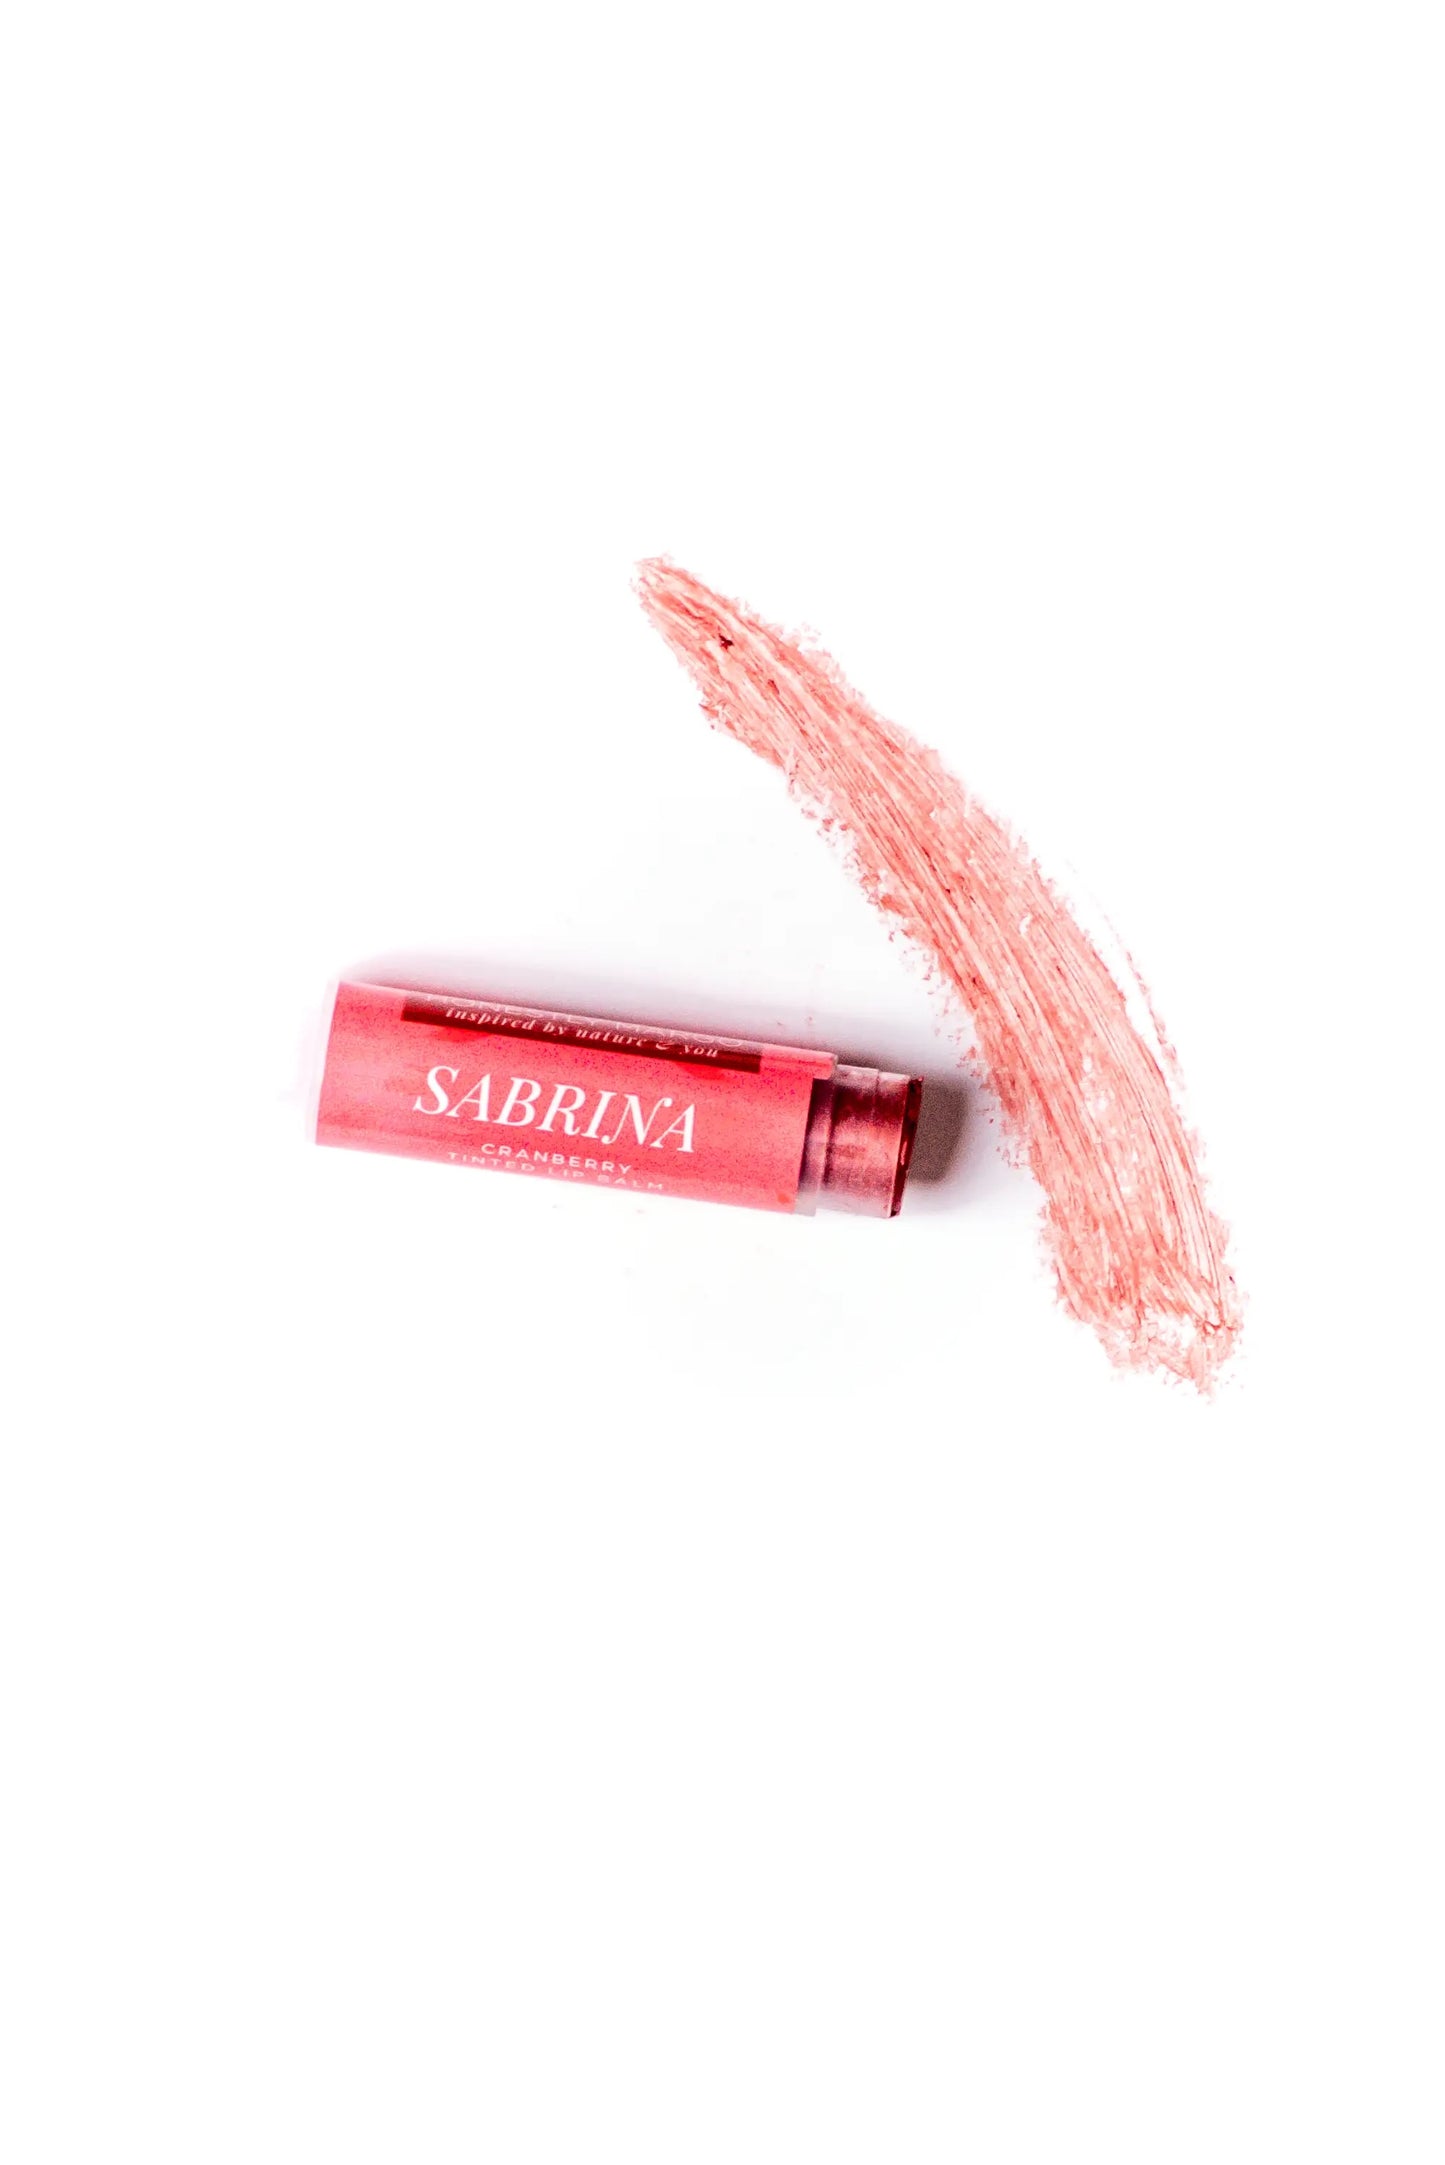 Tinted Lip Balm - Cranberry Sabrina